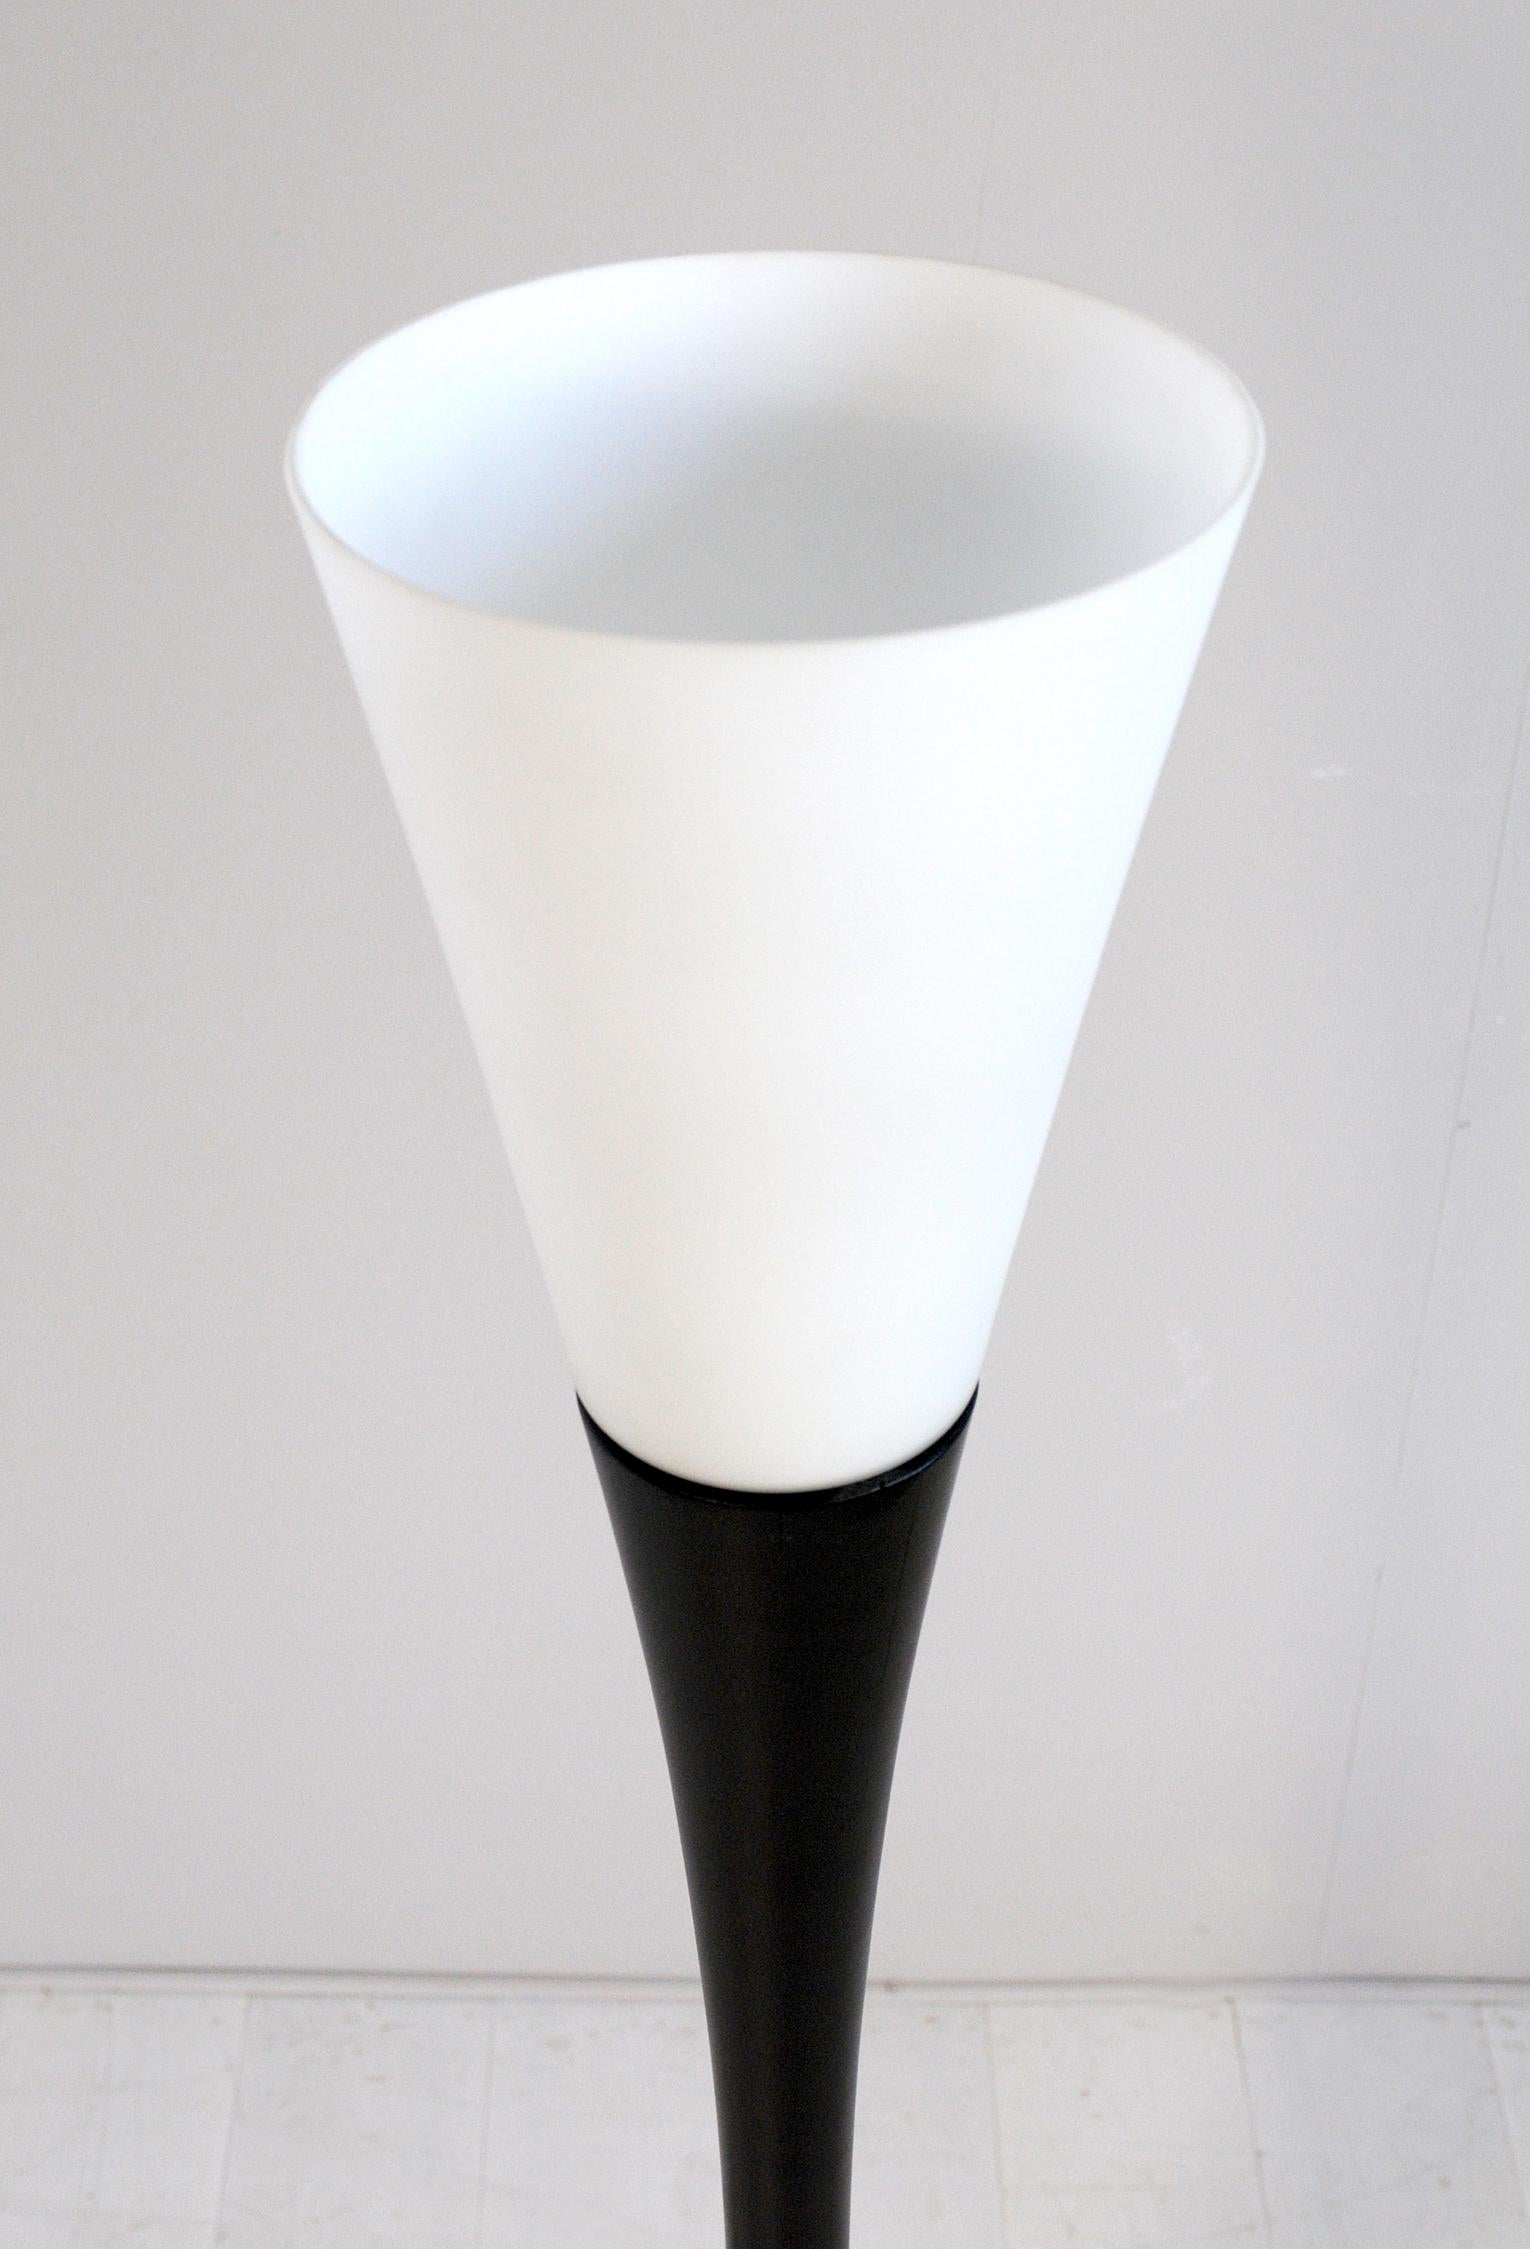 Mid-20th Century Floor Lamp Diabolo J1 by Joseph-André Motte, France 1954